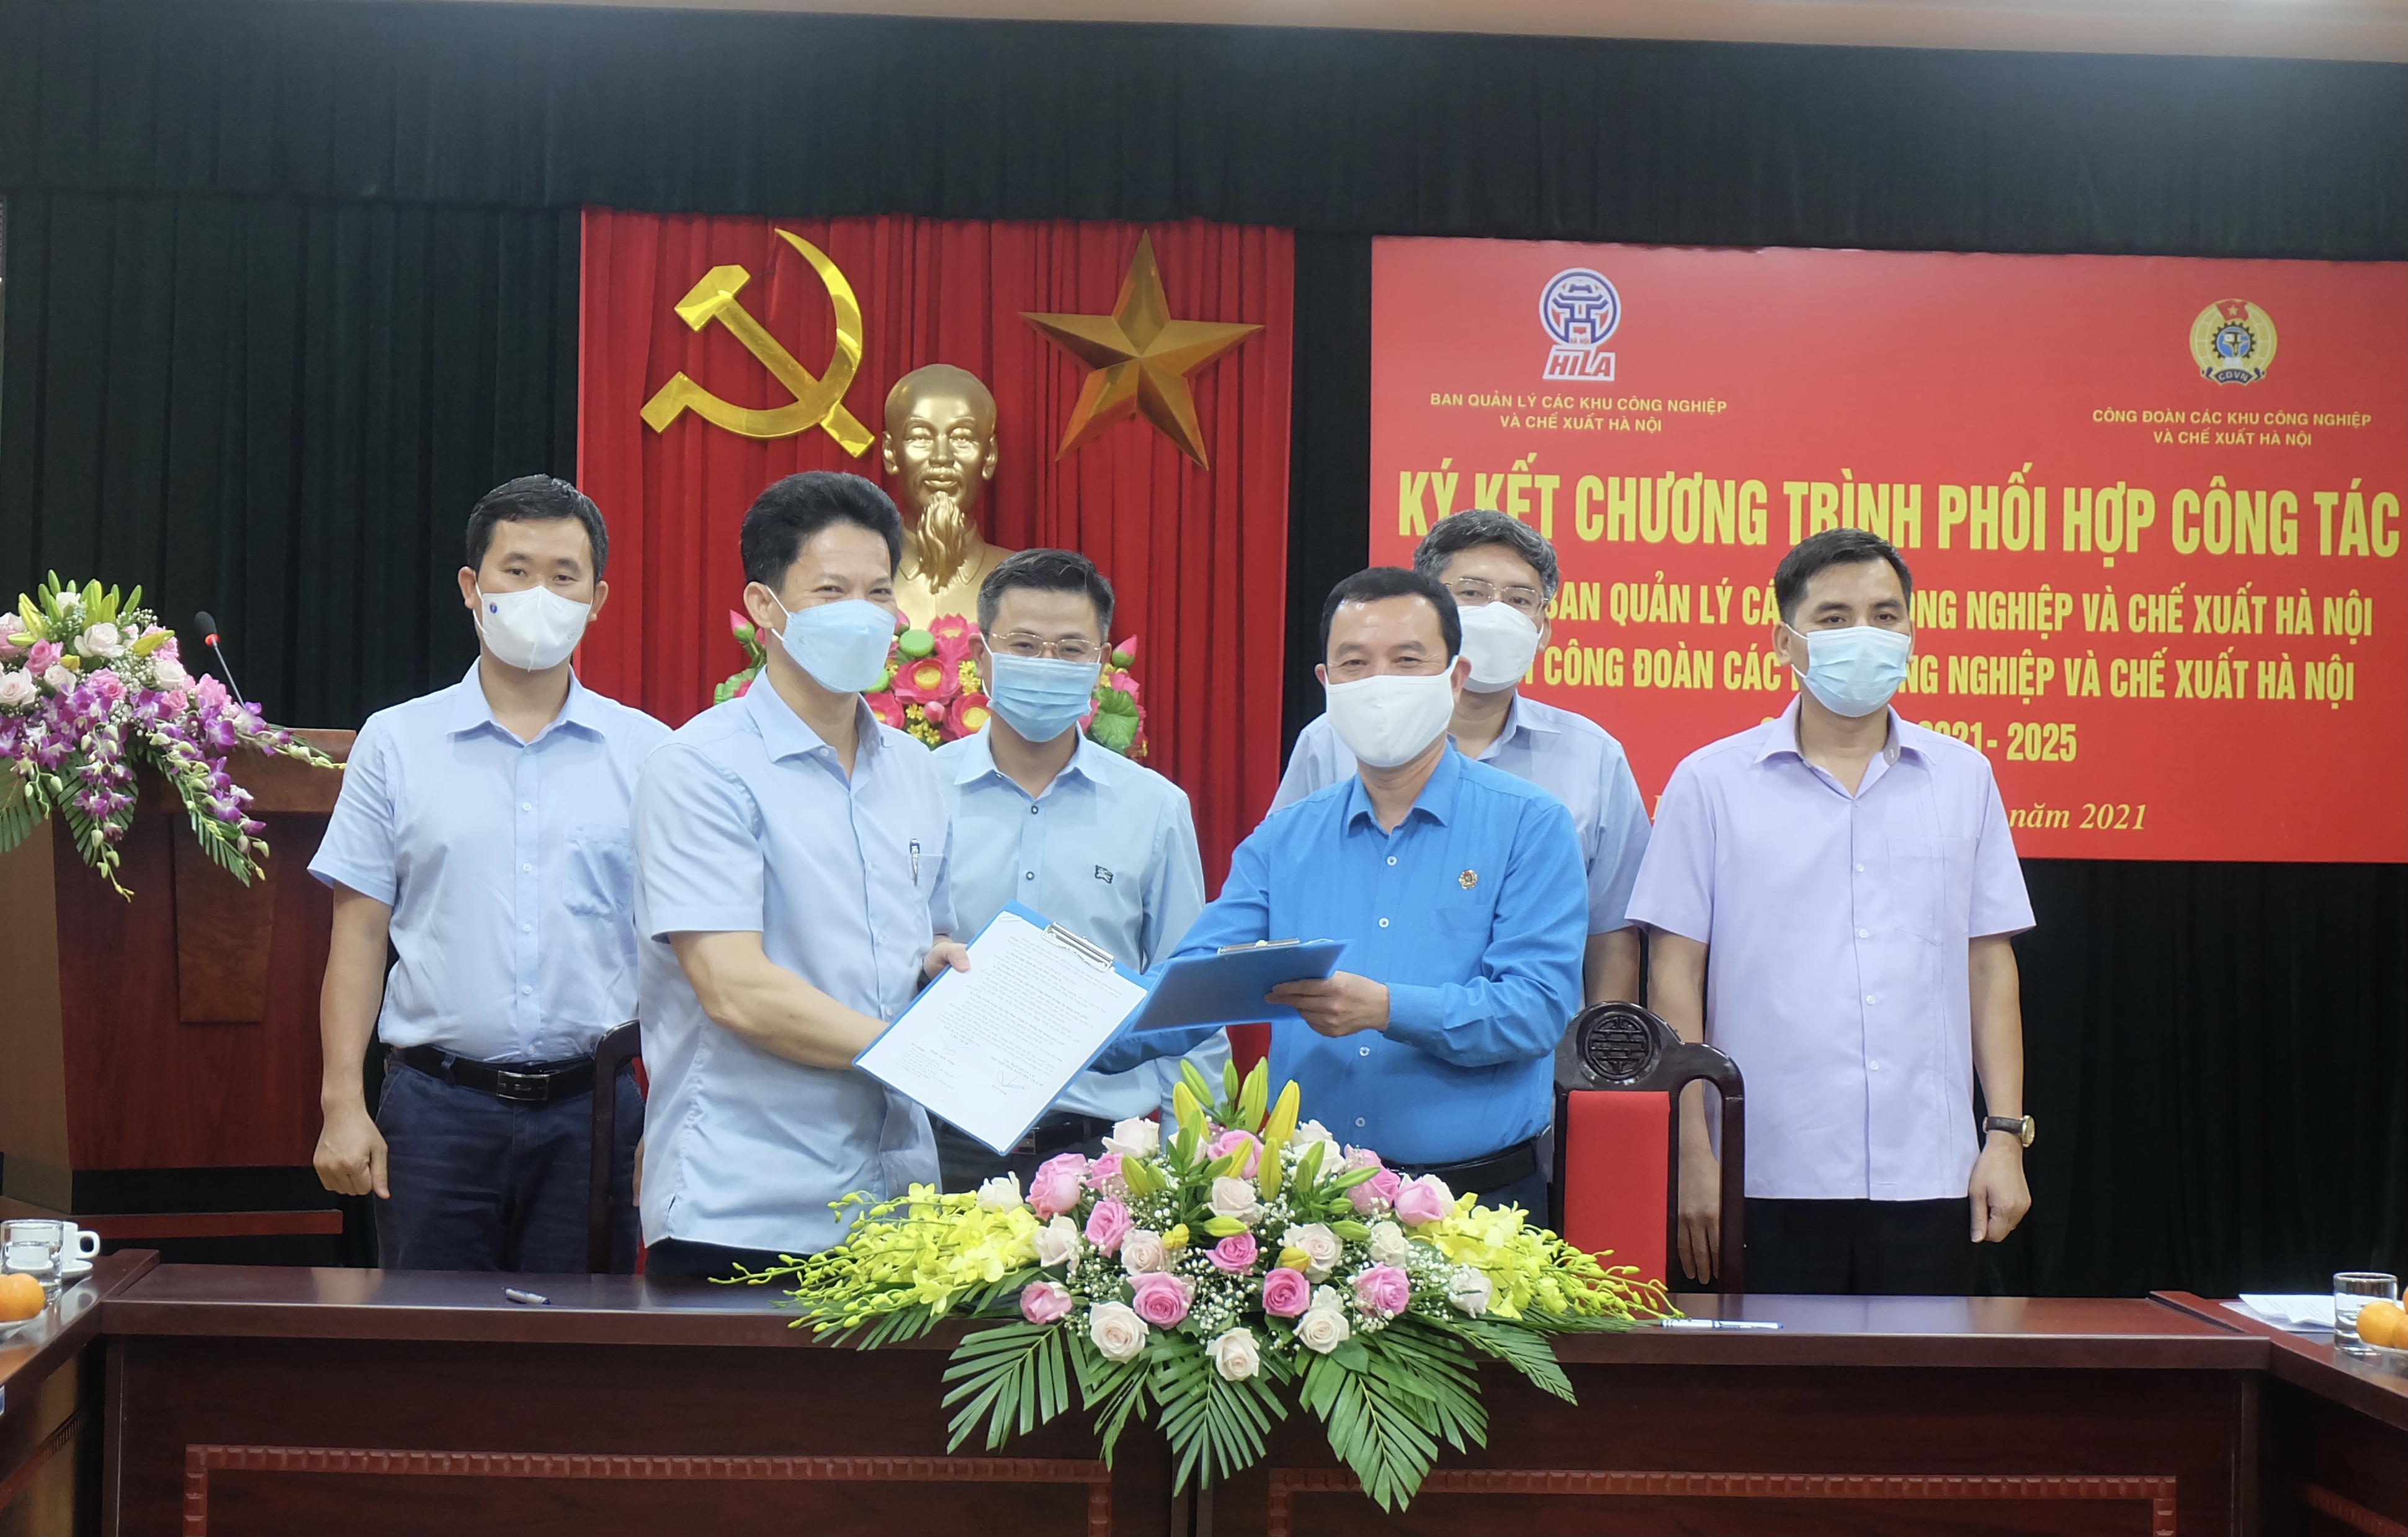 Ban Quản lý và Công đoàn các Khu công nghiệp và chế xuất Hà Nội ký kết chương trình phối hợp công tác